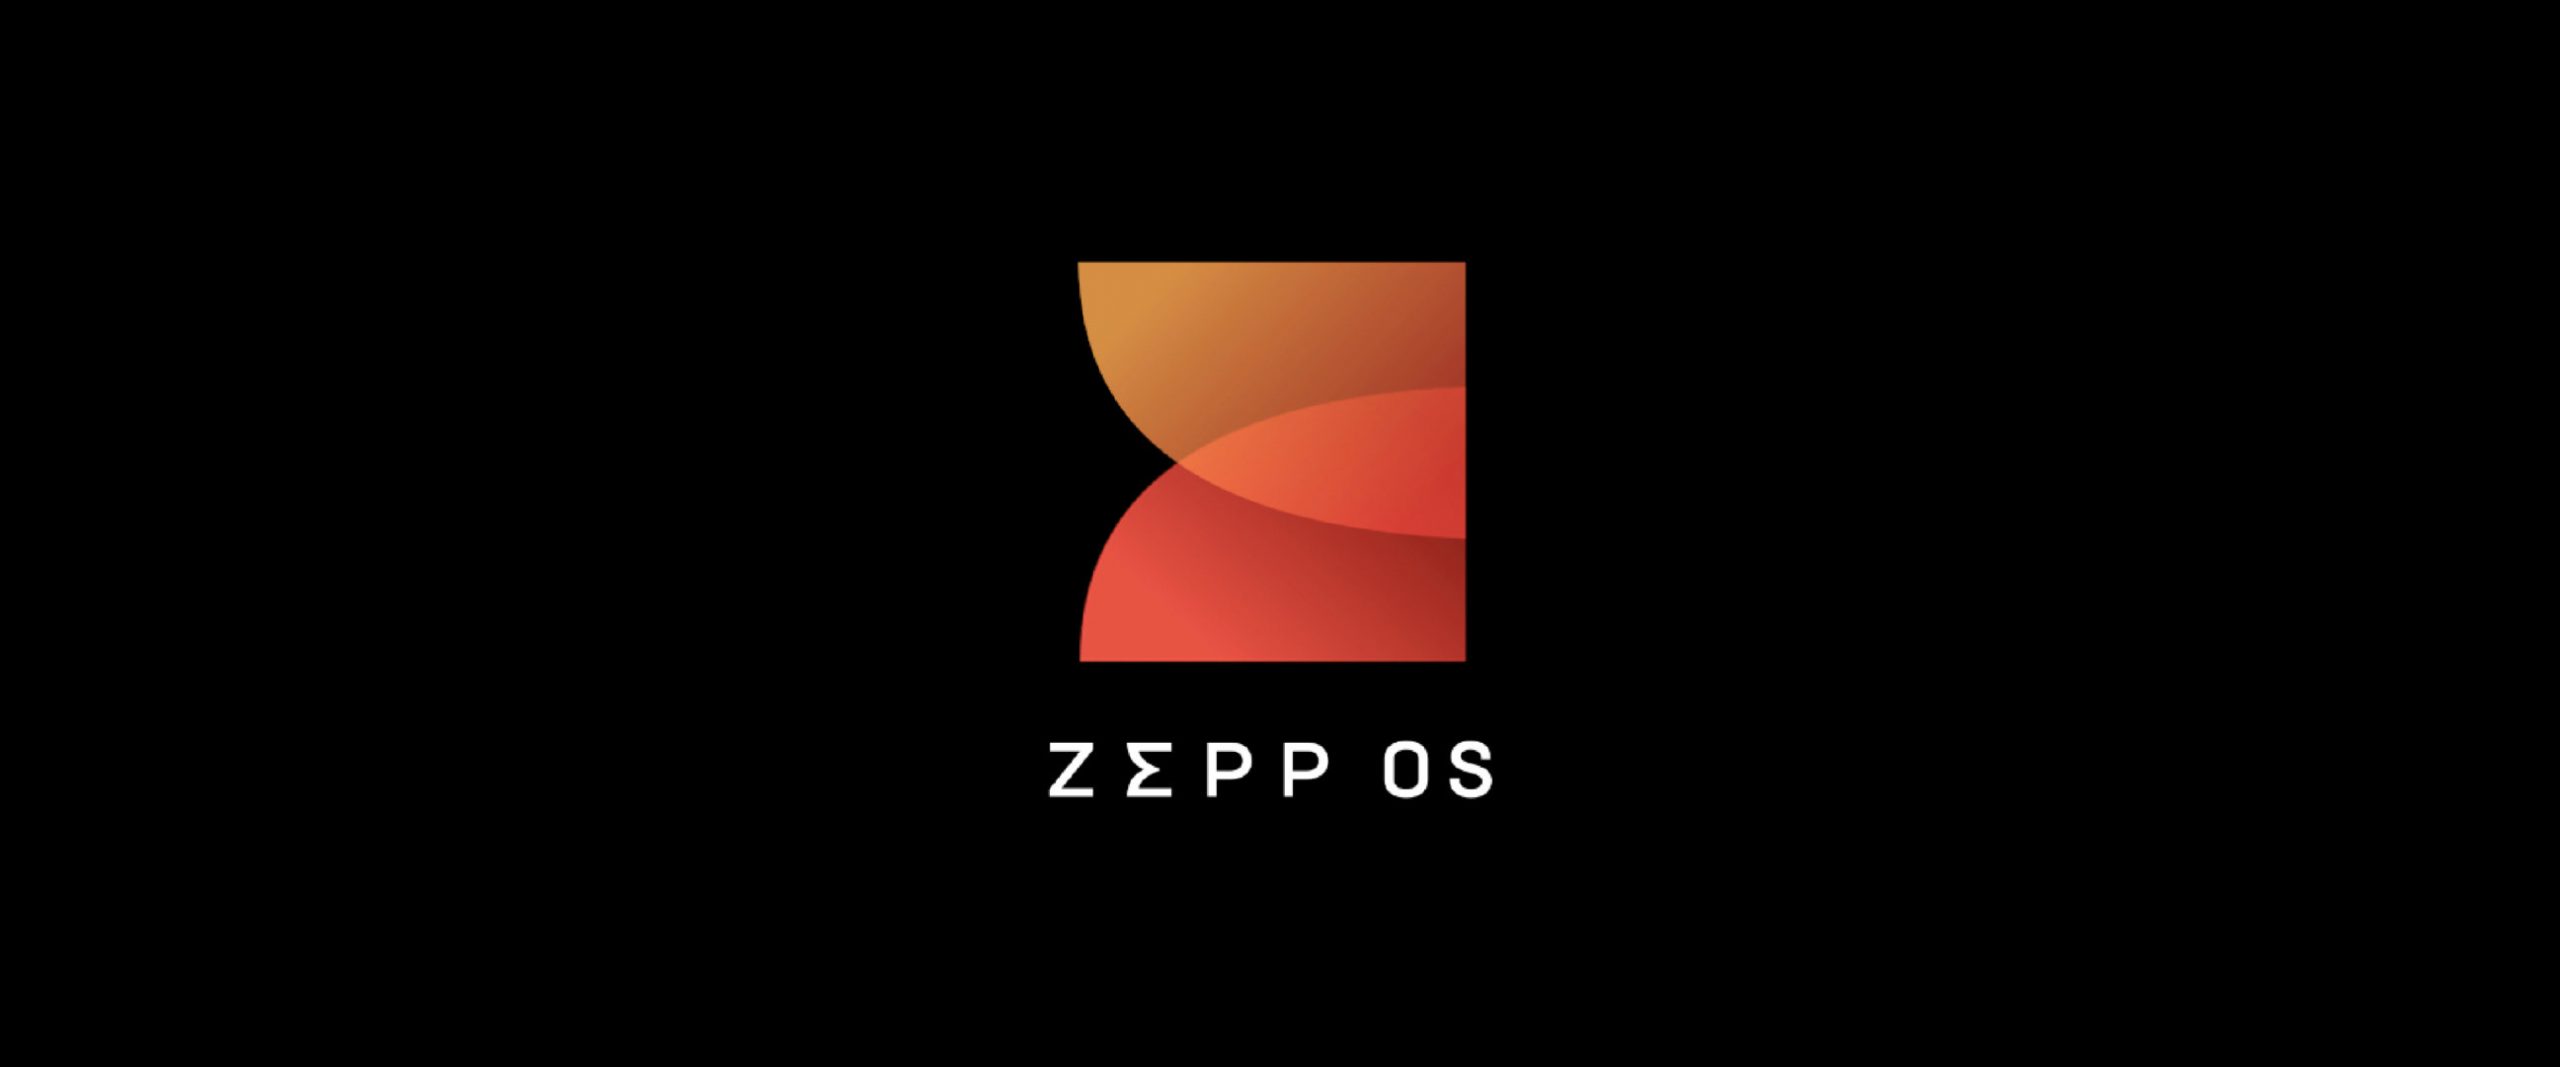 华米科技推出自研黄山2S可穿戴芯片、Zepp OS系统、PumpBeats血压监测引擎-我爱音频网